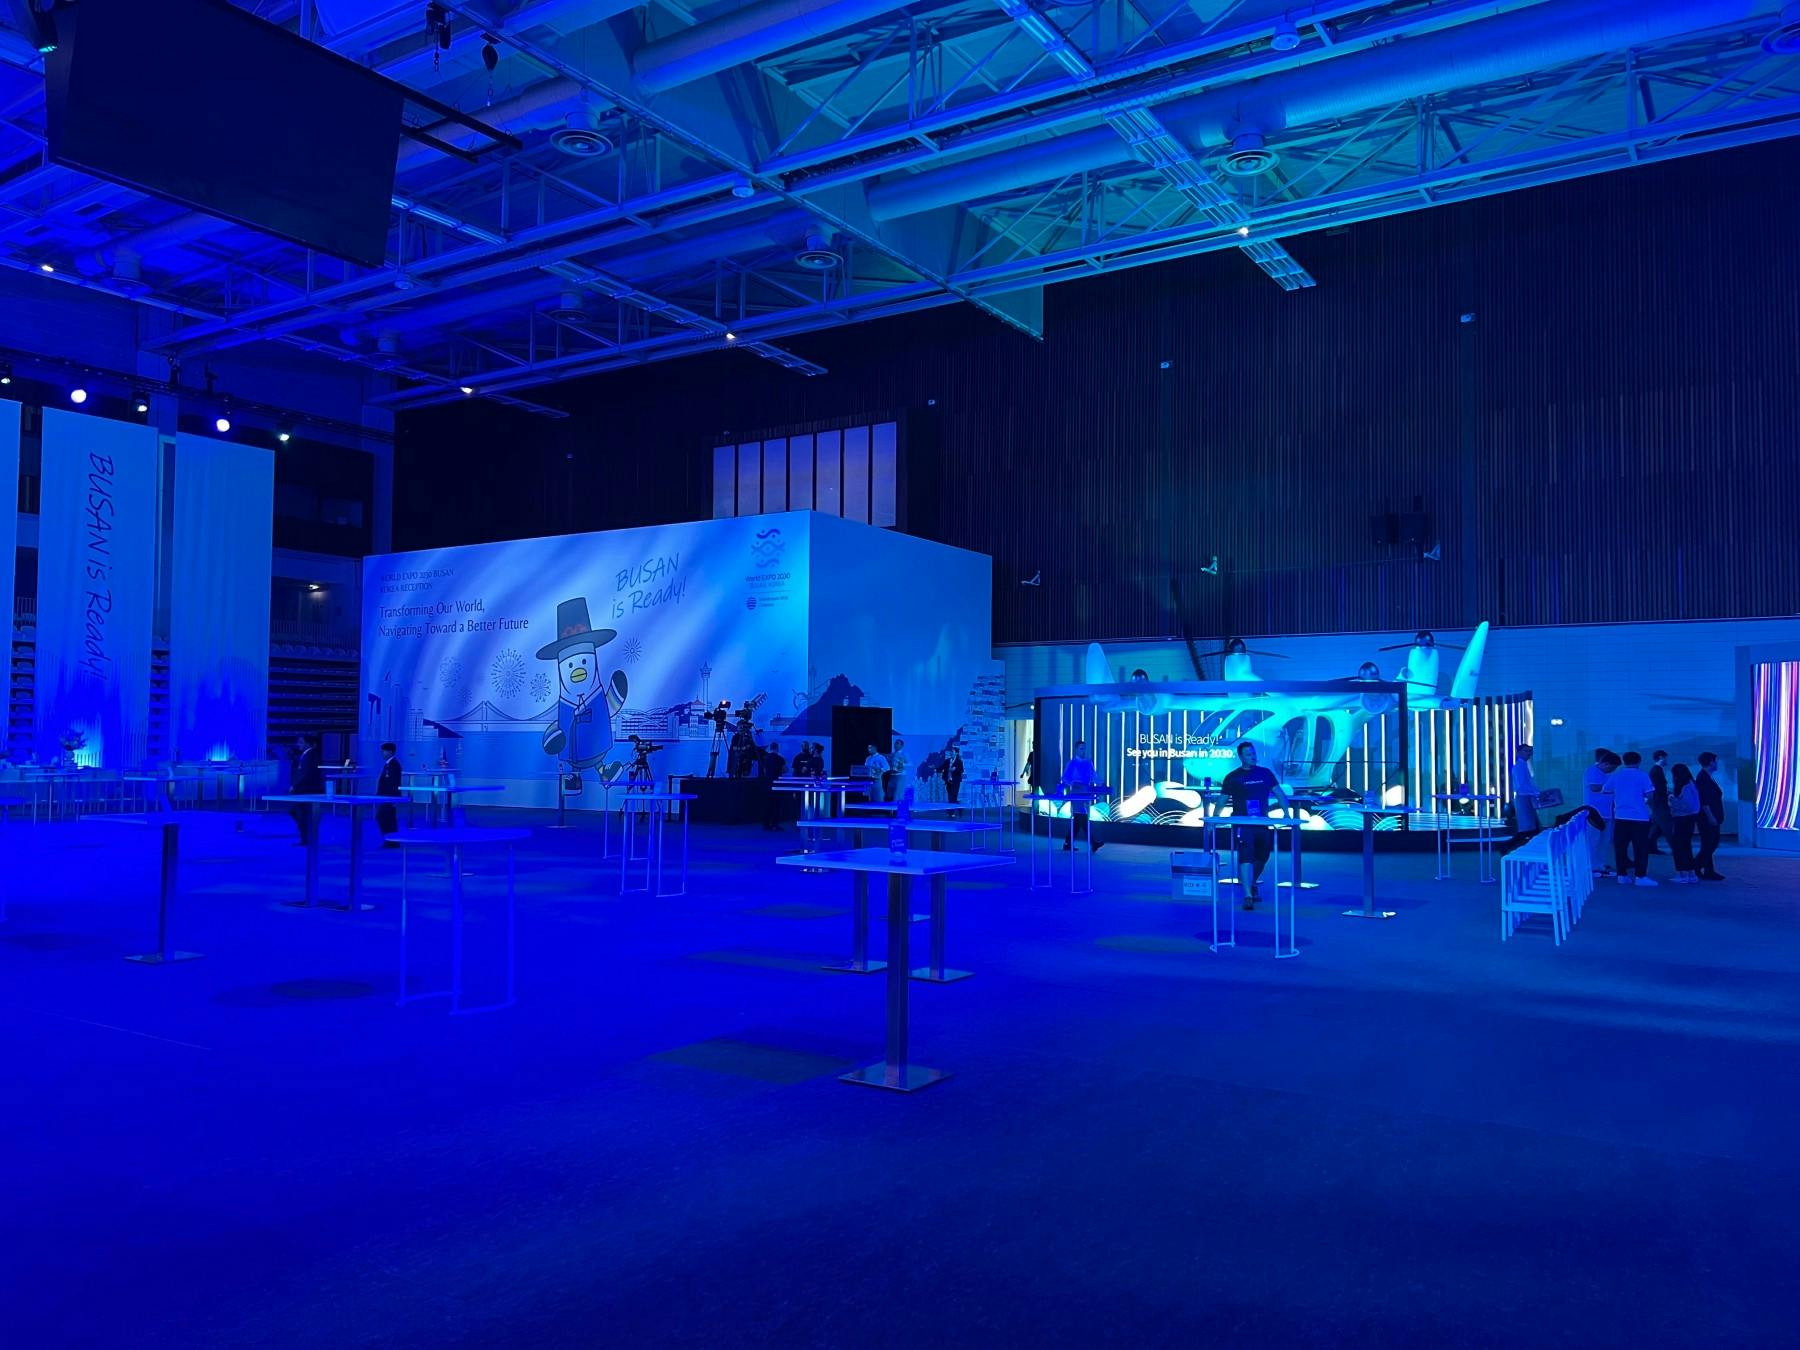 Die Halle der World Expo Busan 2030 in Paris hat eine große Leinwand und mehrere Ausstellungen zur Zukunft.